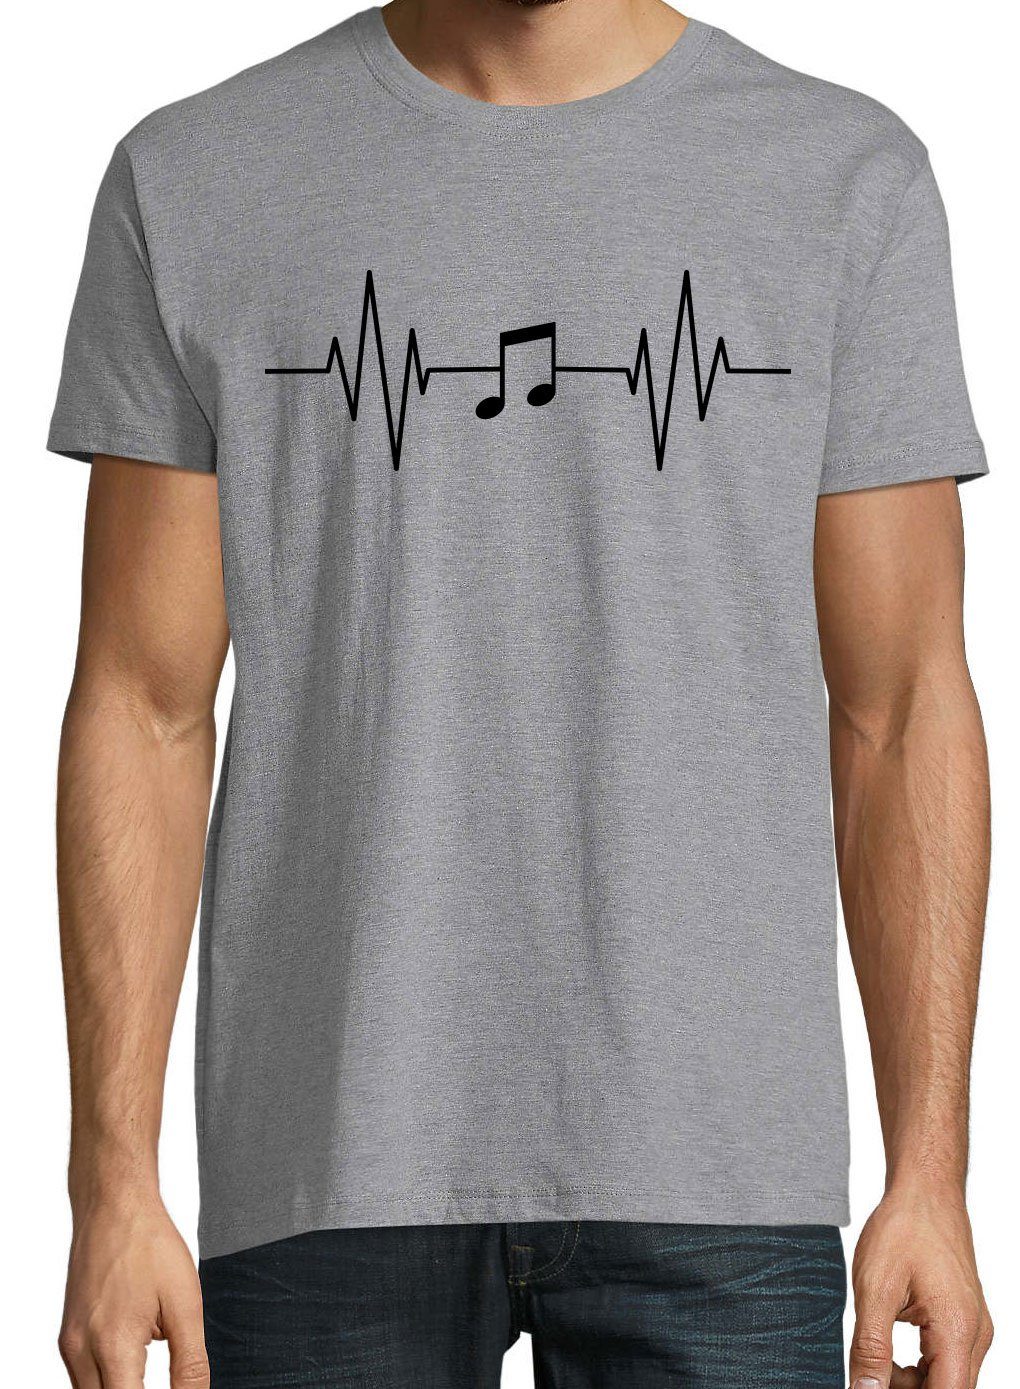 Youth Designz T-Shirt Heartbeat Musik Frontprint mit Herren Grau Music Note Shirt